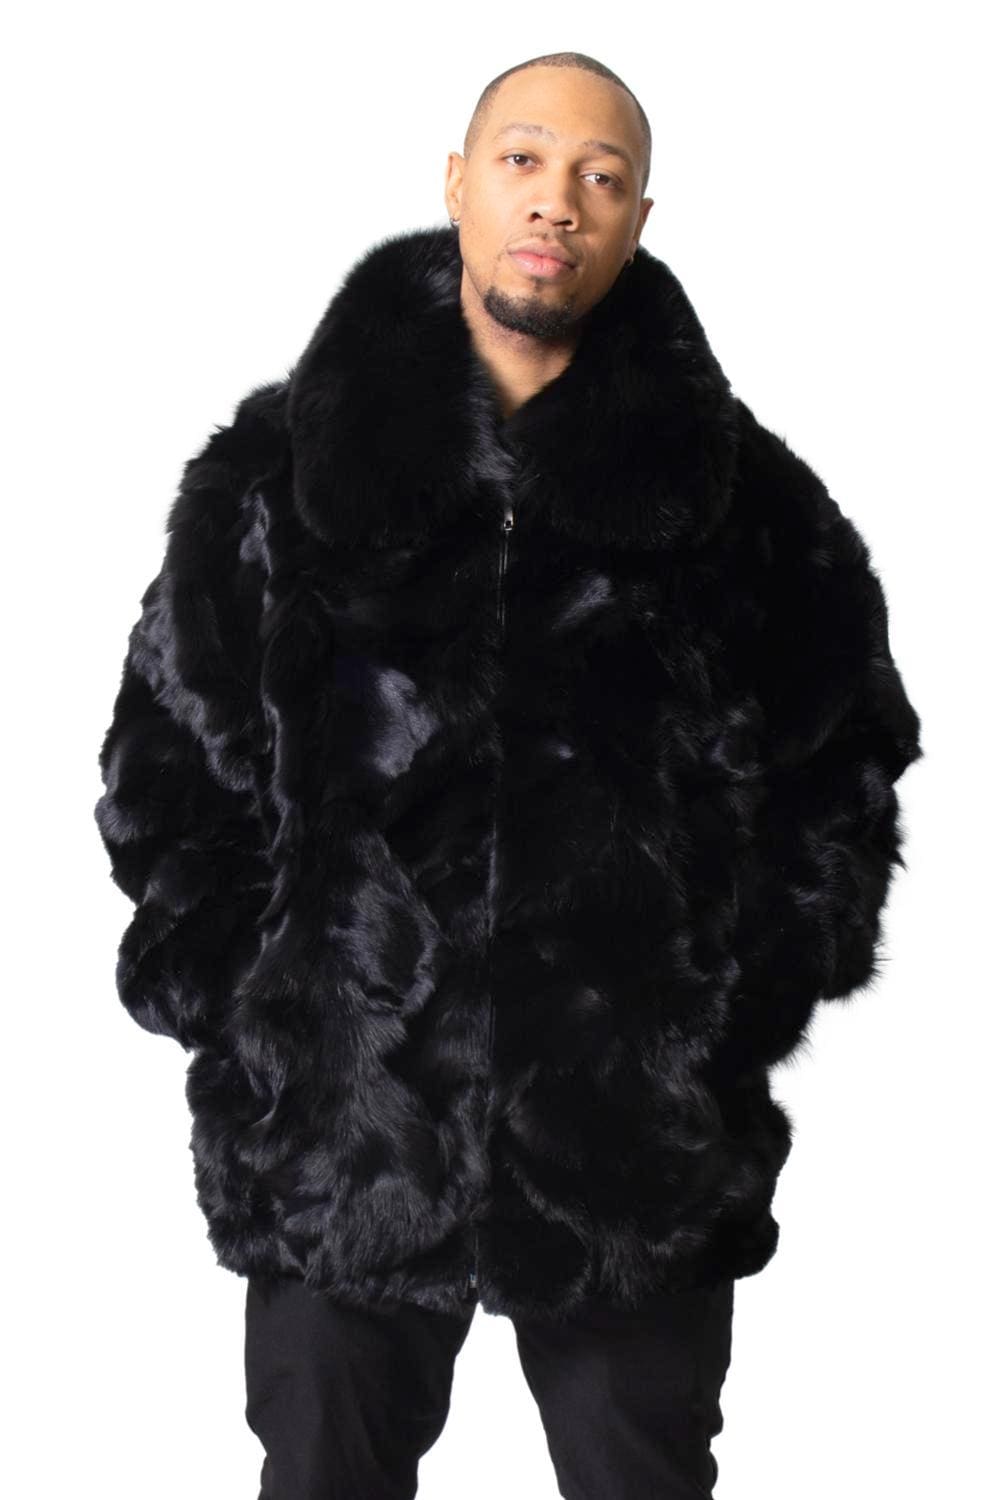 M13 2 man's Fox Fur Coat Ugent Furs